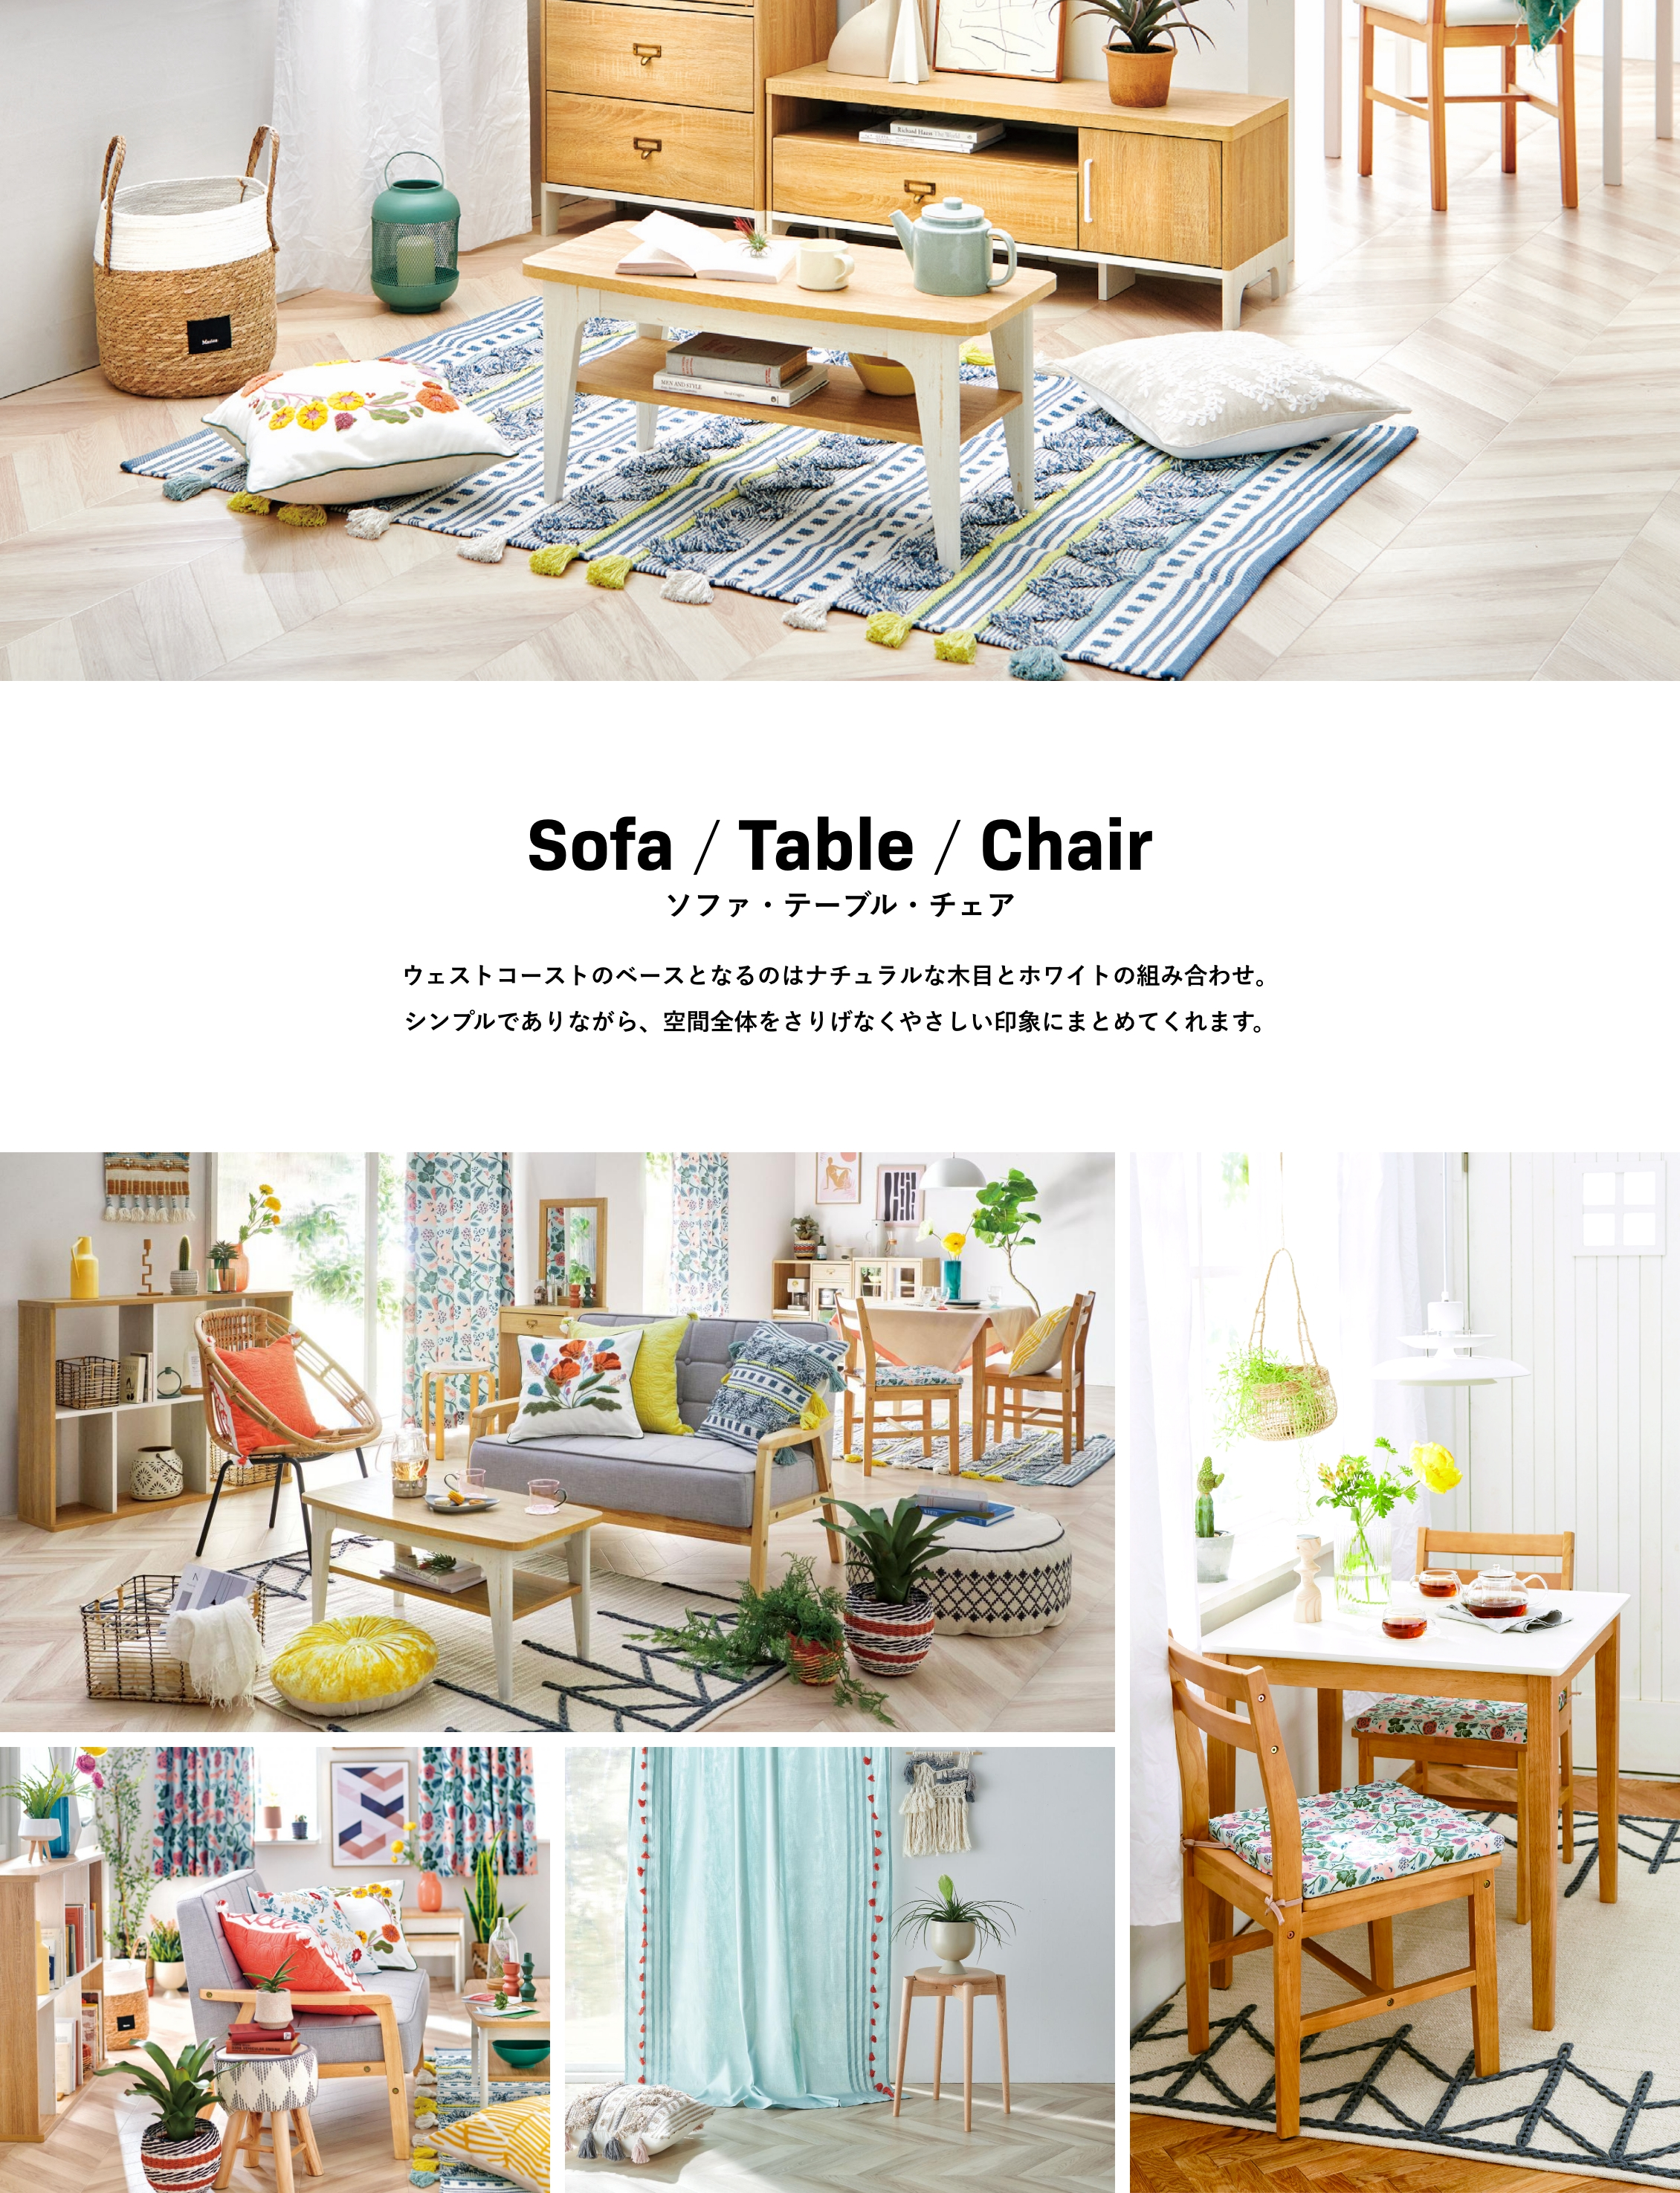 Sofa / Table / Chair ソファ・テーブル・チェア ウェストコーストのベースとなるのはナチュラルな木目とホワイトの組み合わせ。シンプルでありながら、空間全体をさりげなくやさしい印象にまとめてくれます。